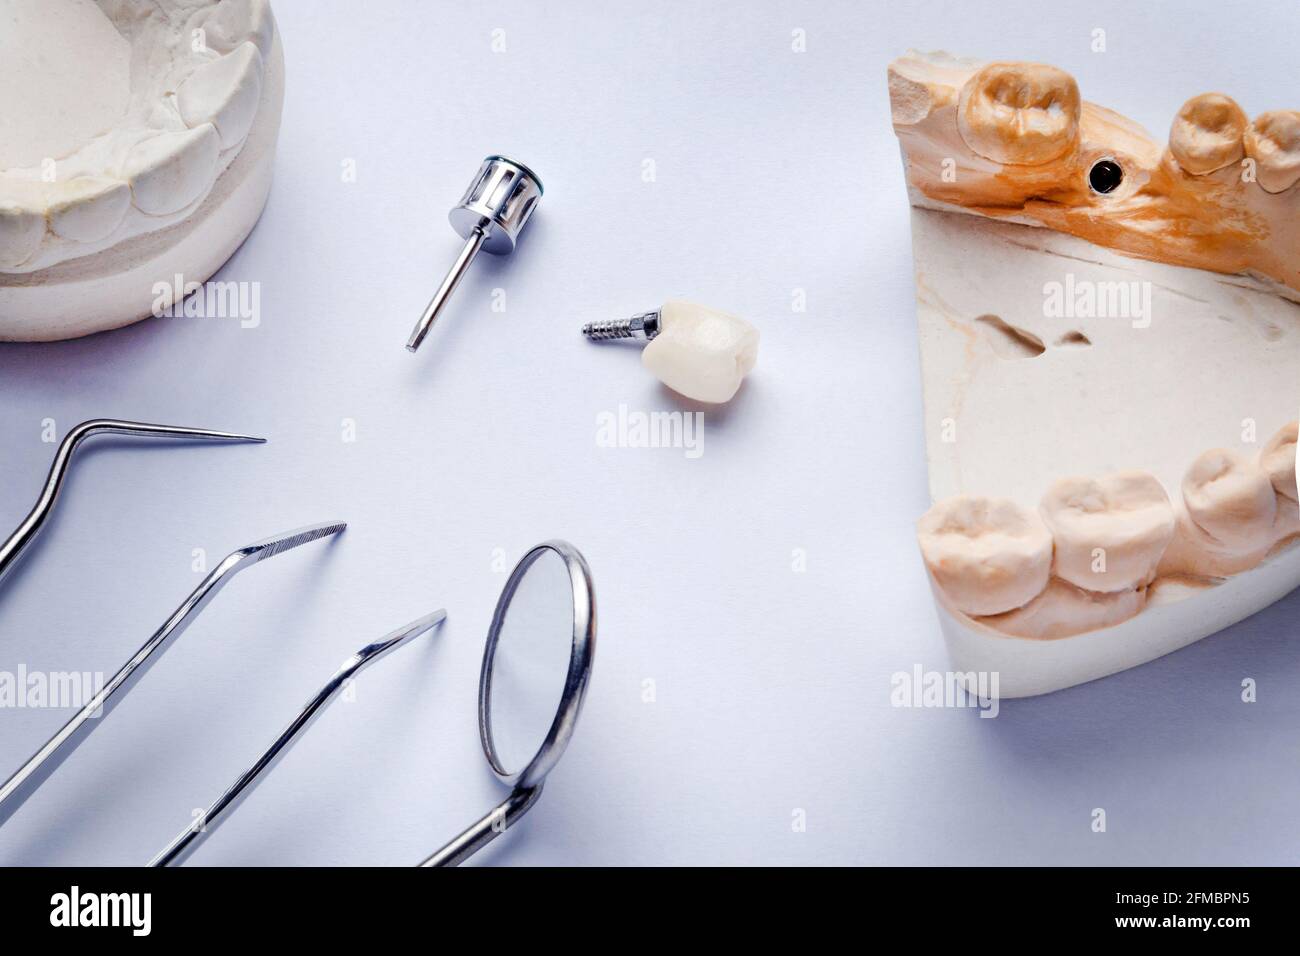 Zahnimplantatkrone auf weißem Hintergrund mit Gipsmodellen und zahnärztlichen Instrumenten, Sonde, Spiegel und Pinzette Stockfoto